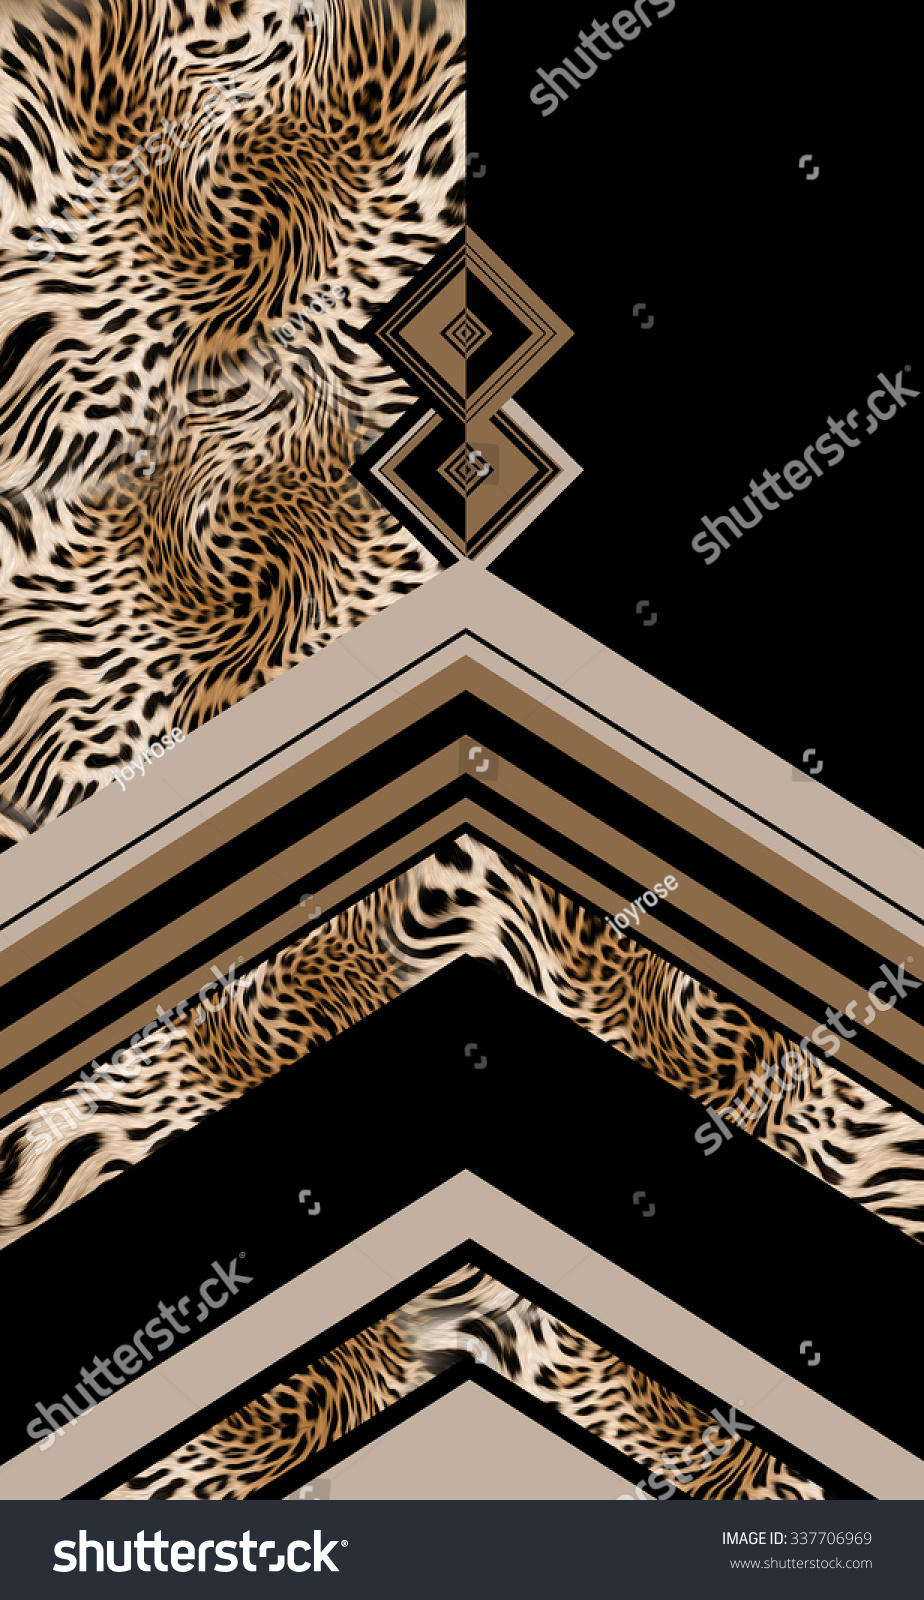 Leopard Geometric Stock Photo 337706969 : Shutterstock